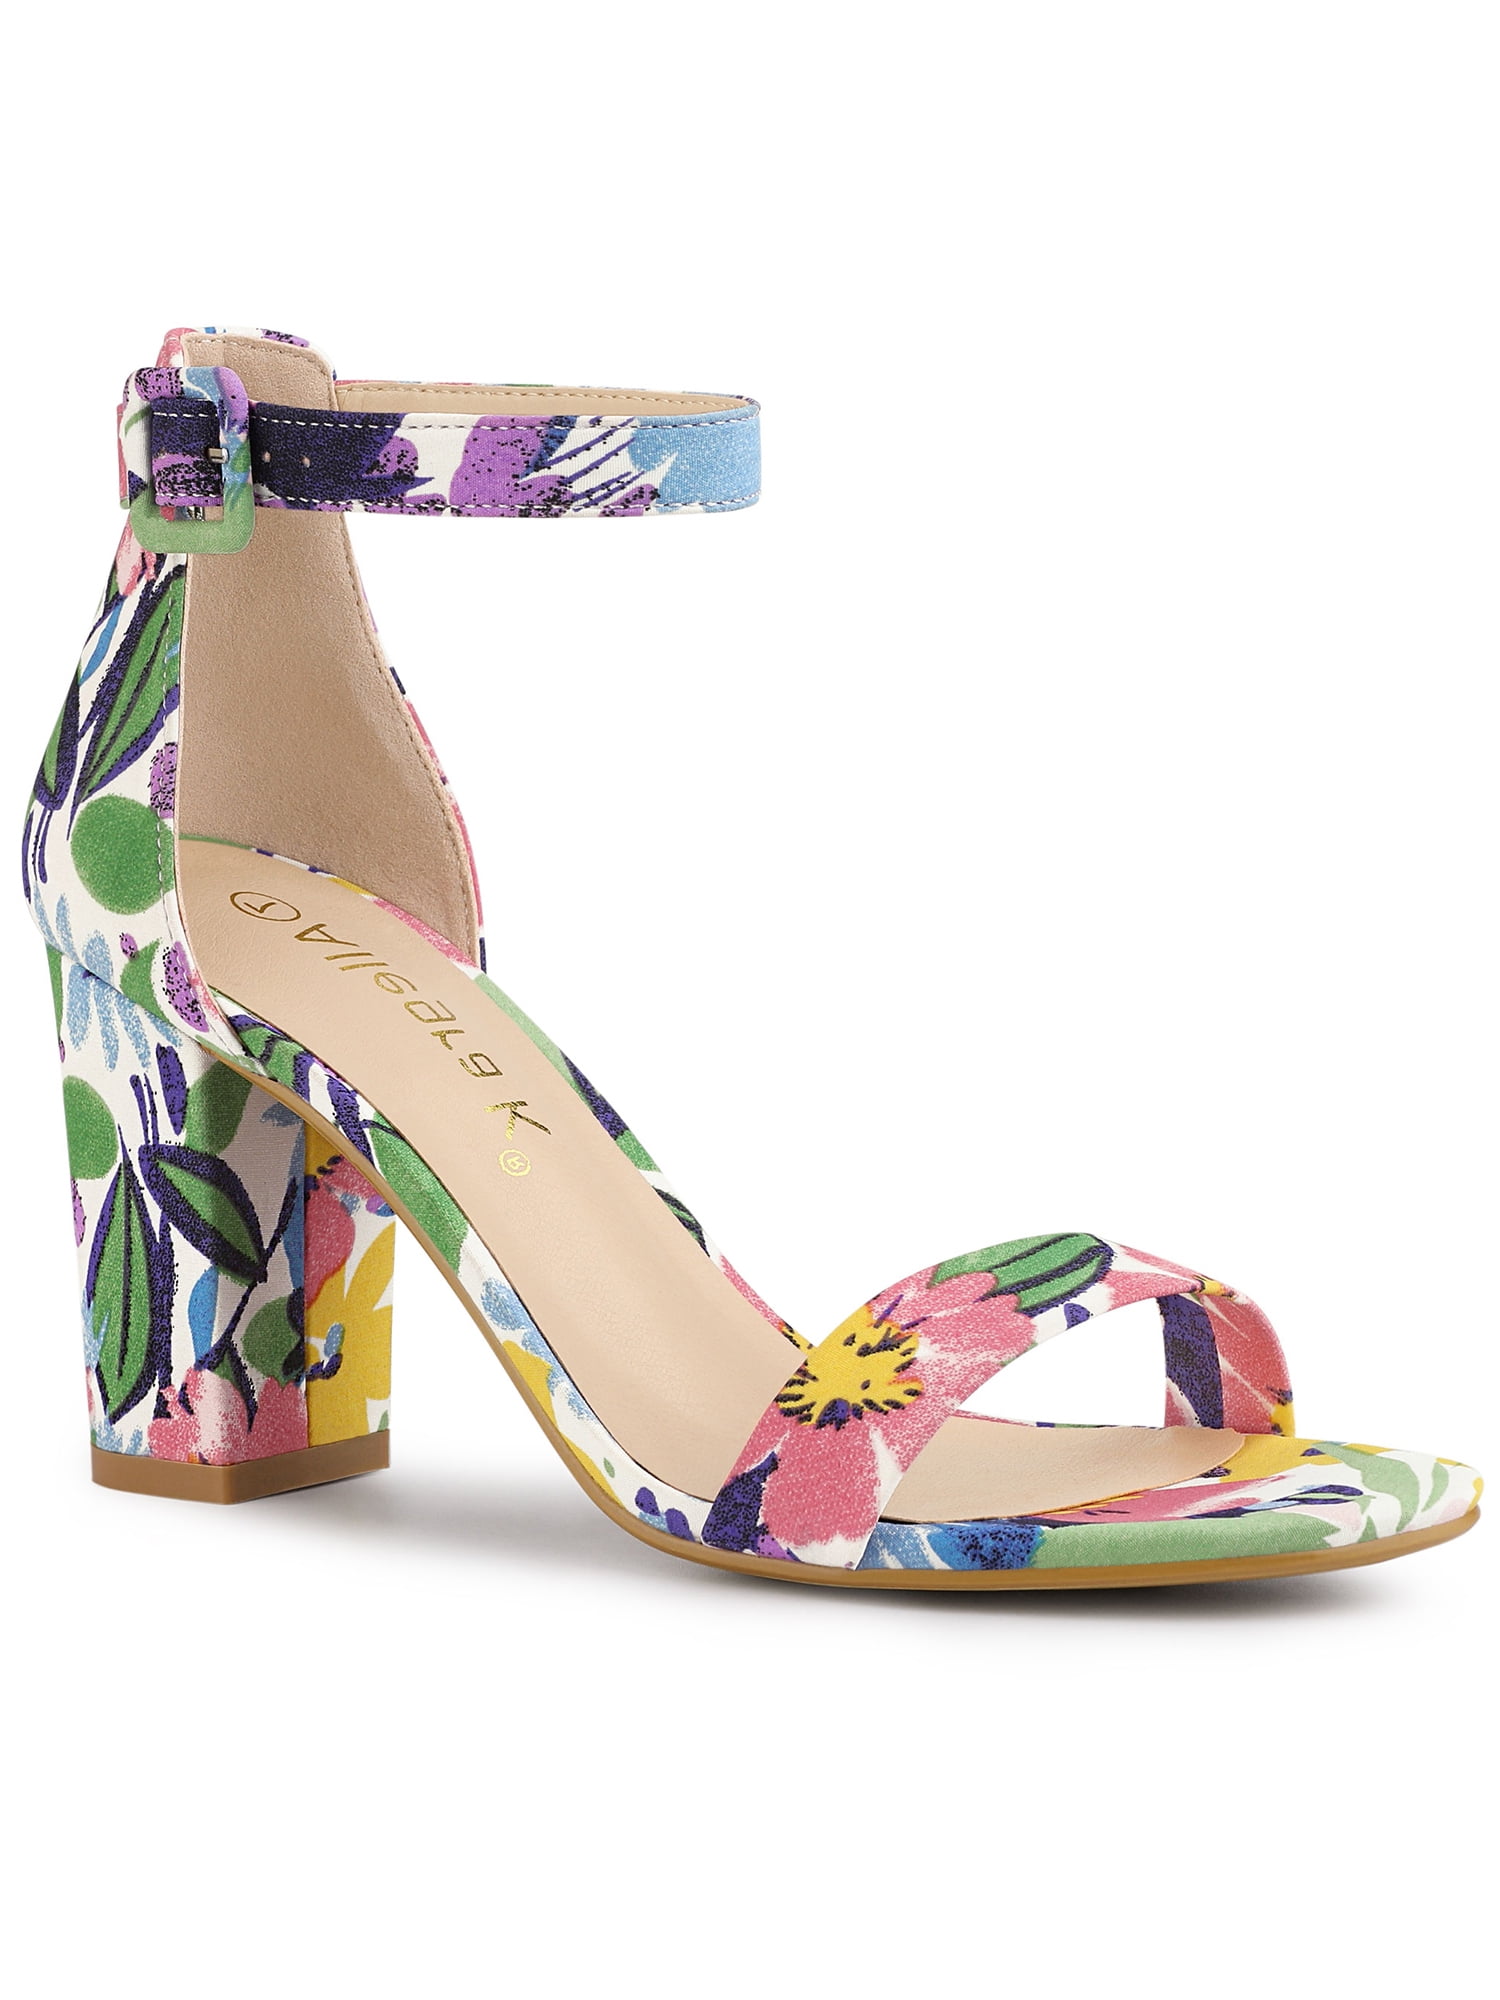 Cute White and Brown Floral Print Heels - Ankle Strap Heels - Vegan Leather  Heels - $29.00 - Lulus